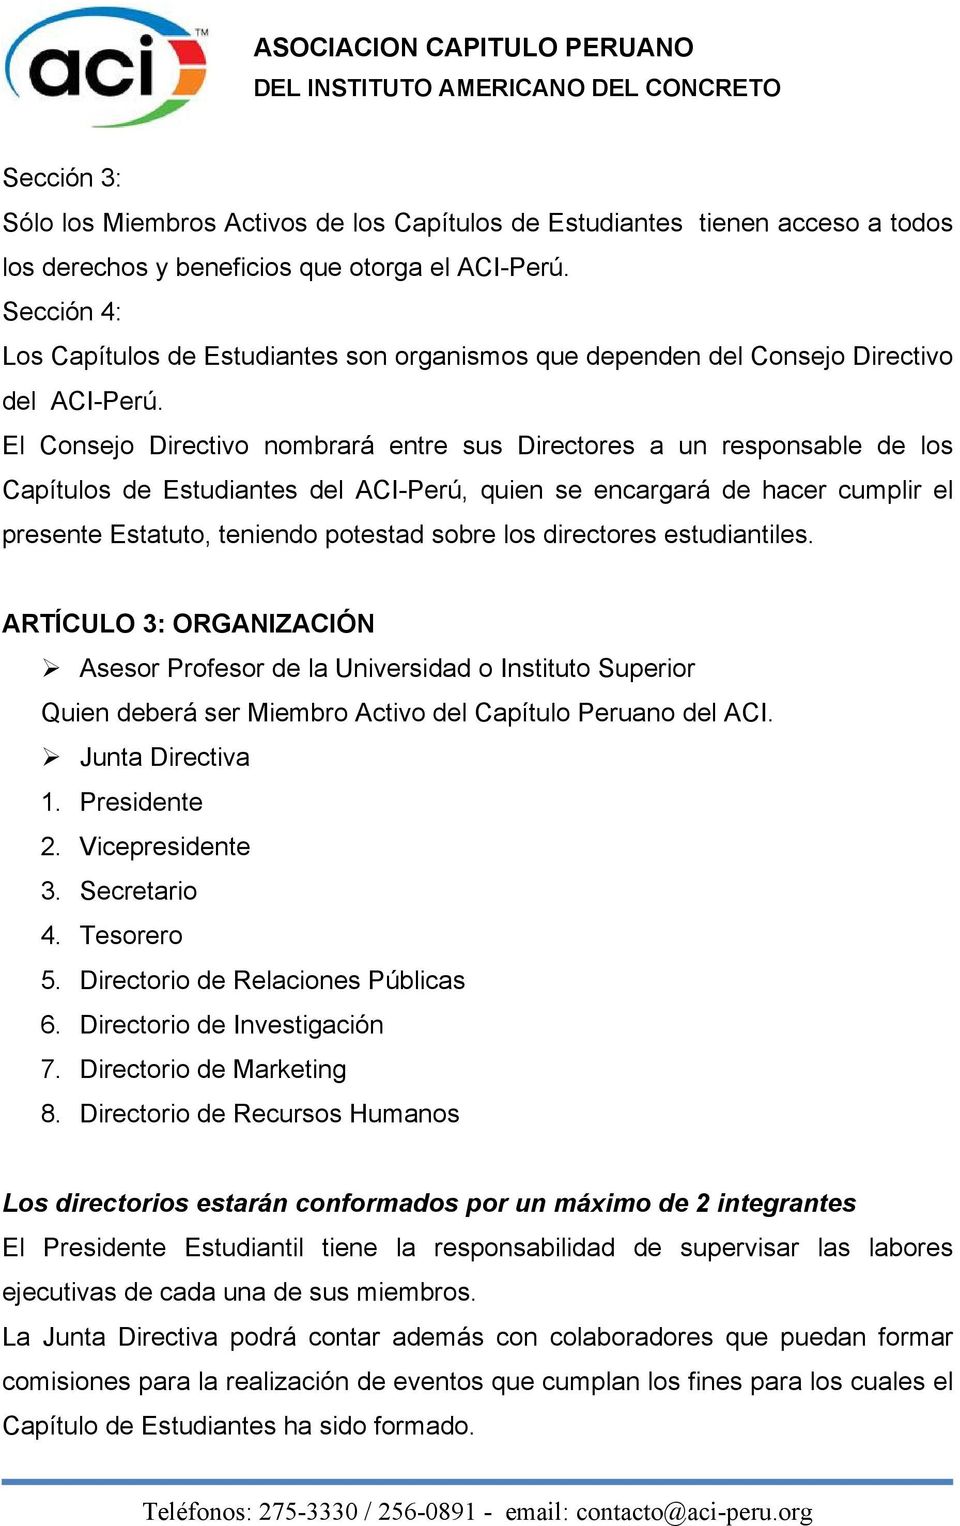 El Consejo Directivo nombrará entre sus Directores a un responsable de los Capítulos de Estudiantes del ACI-Perú, quien se encargará de hacer cumplir el presente Estatuto, teniendo potestad sobre los